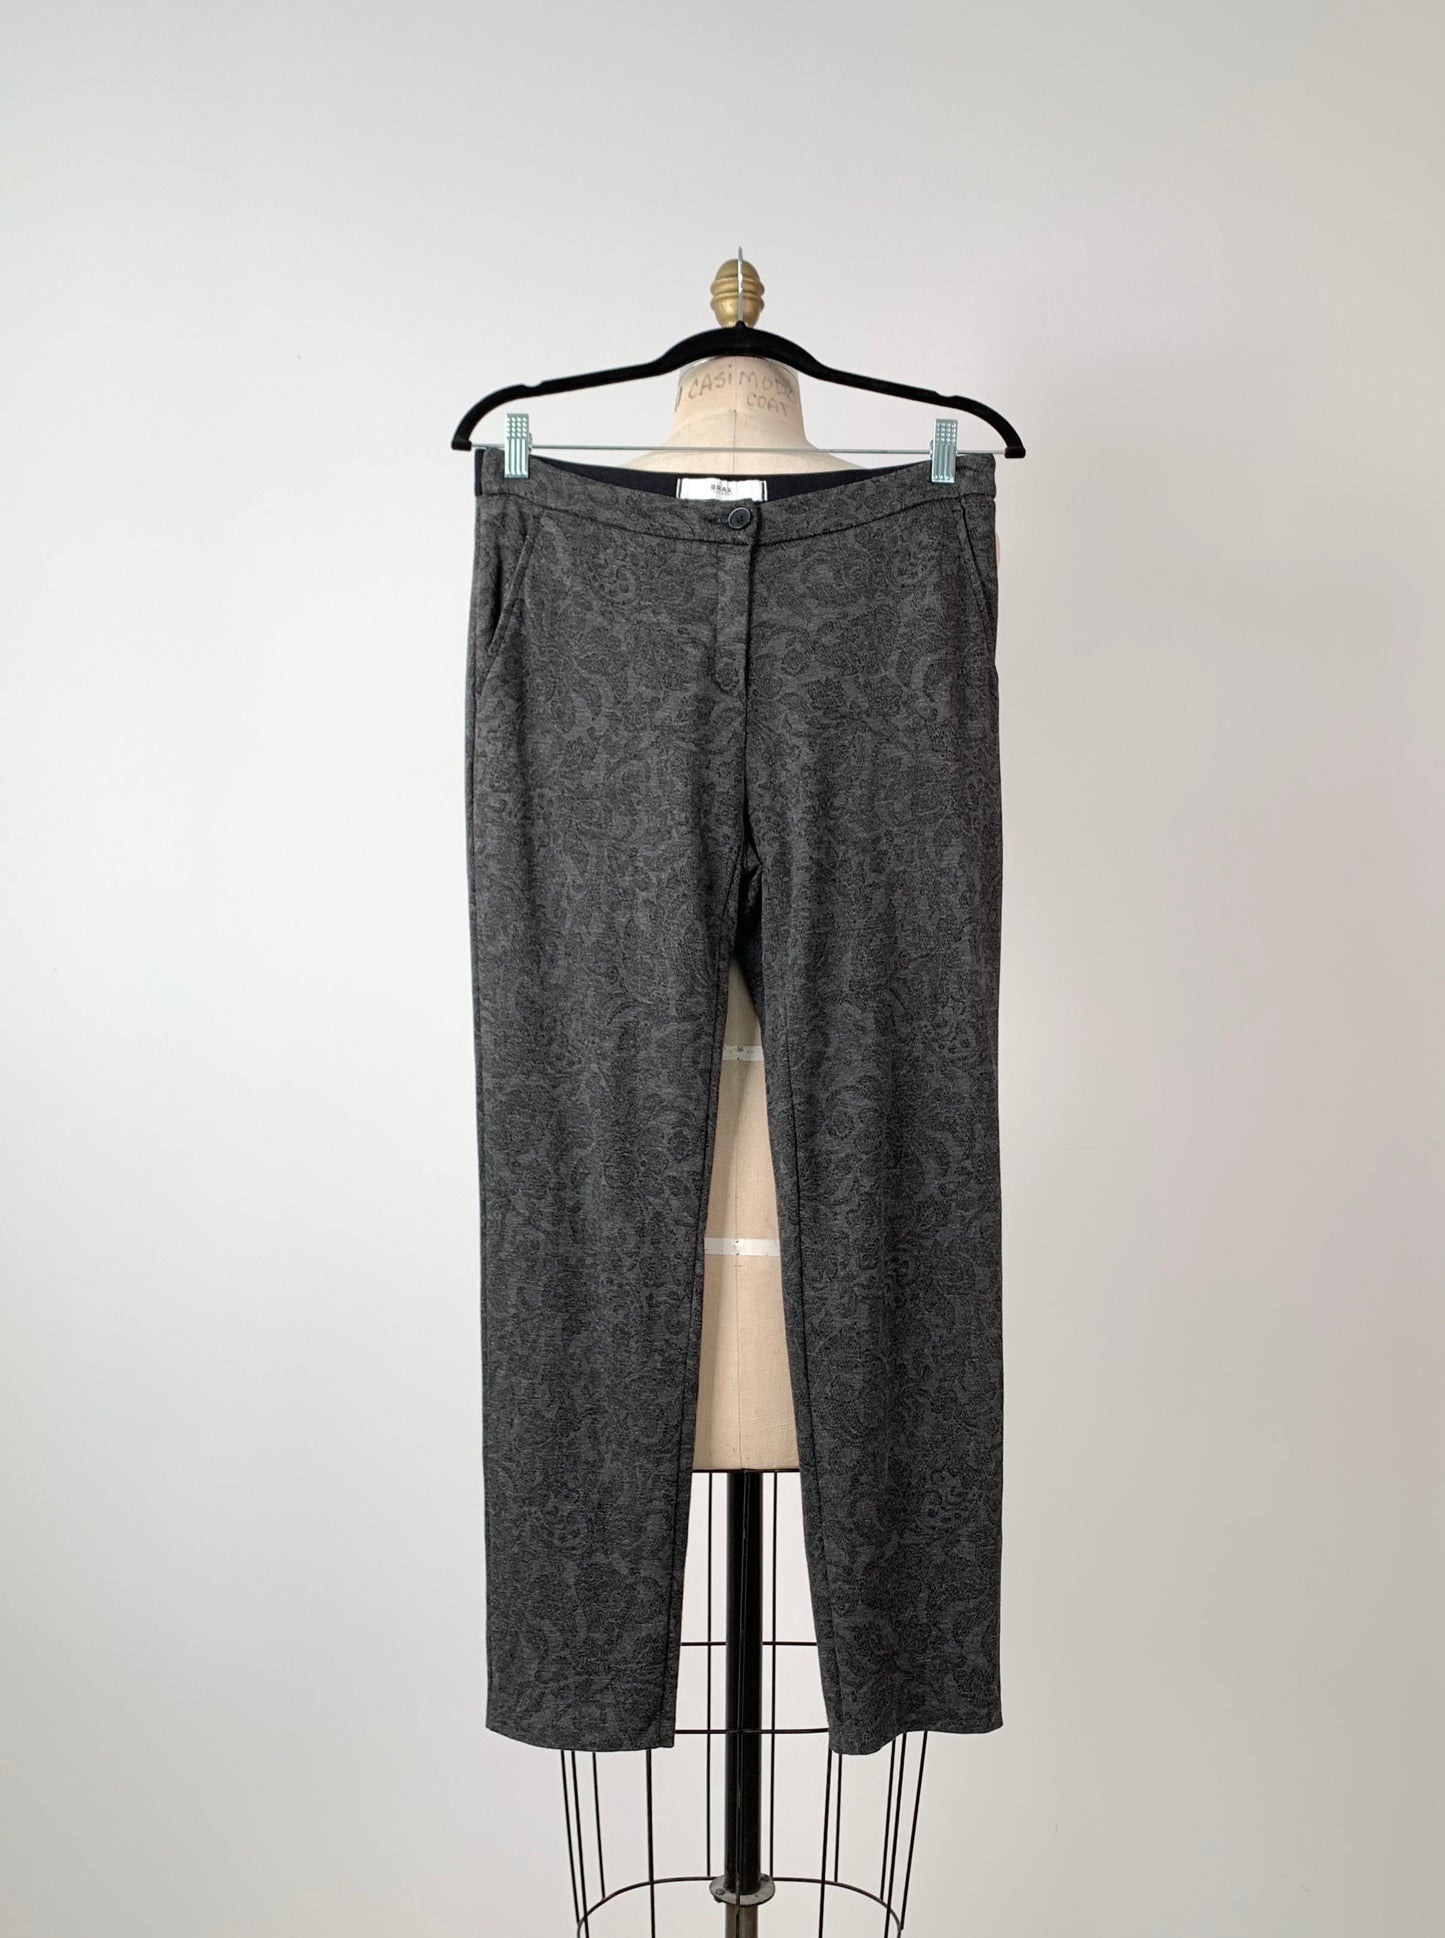 Pantalon legging gris à imprimé floral (M)